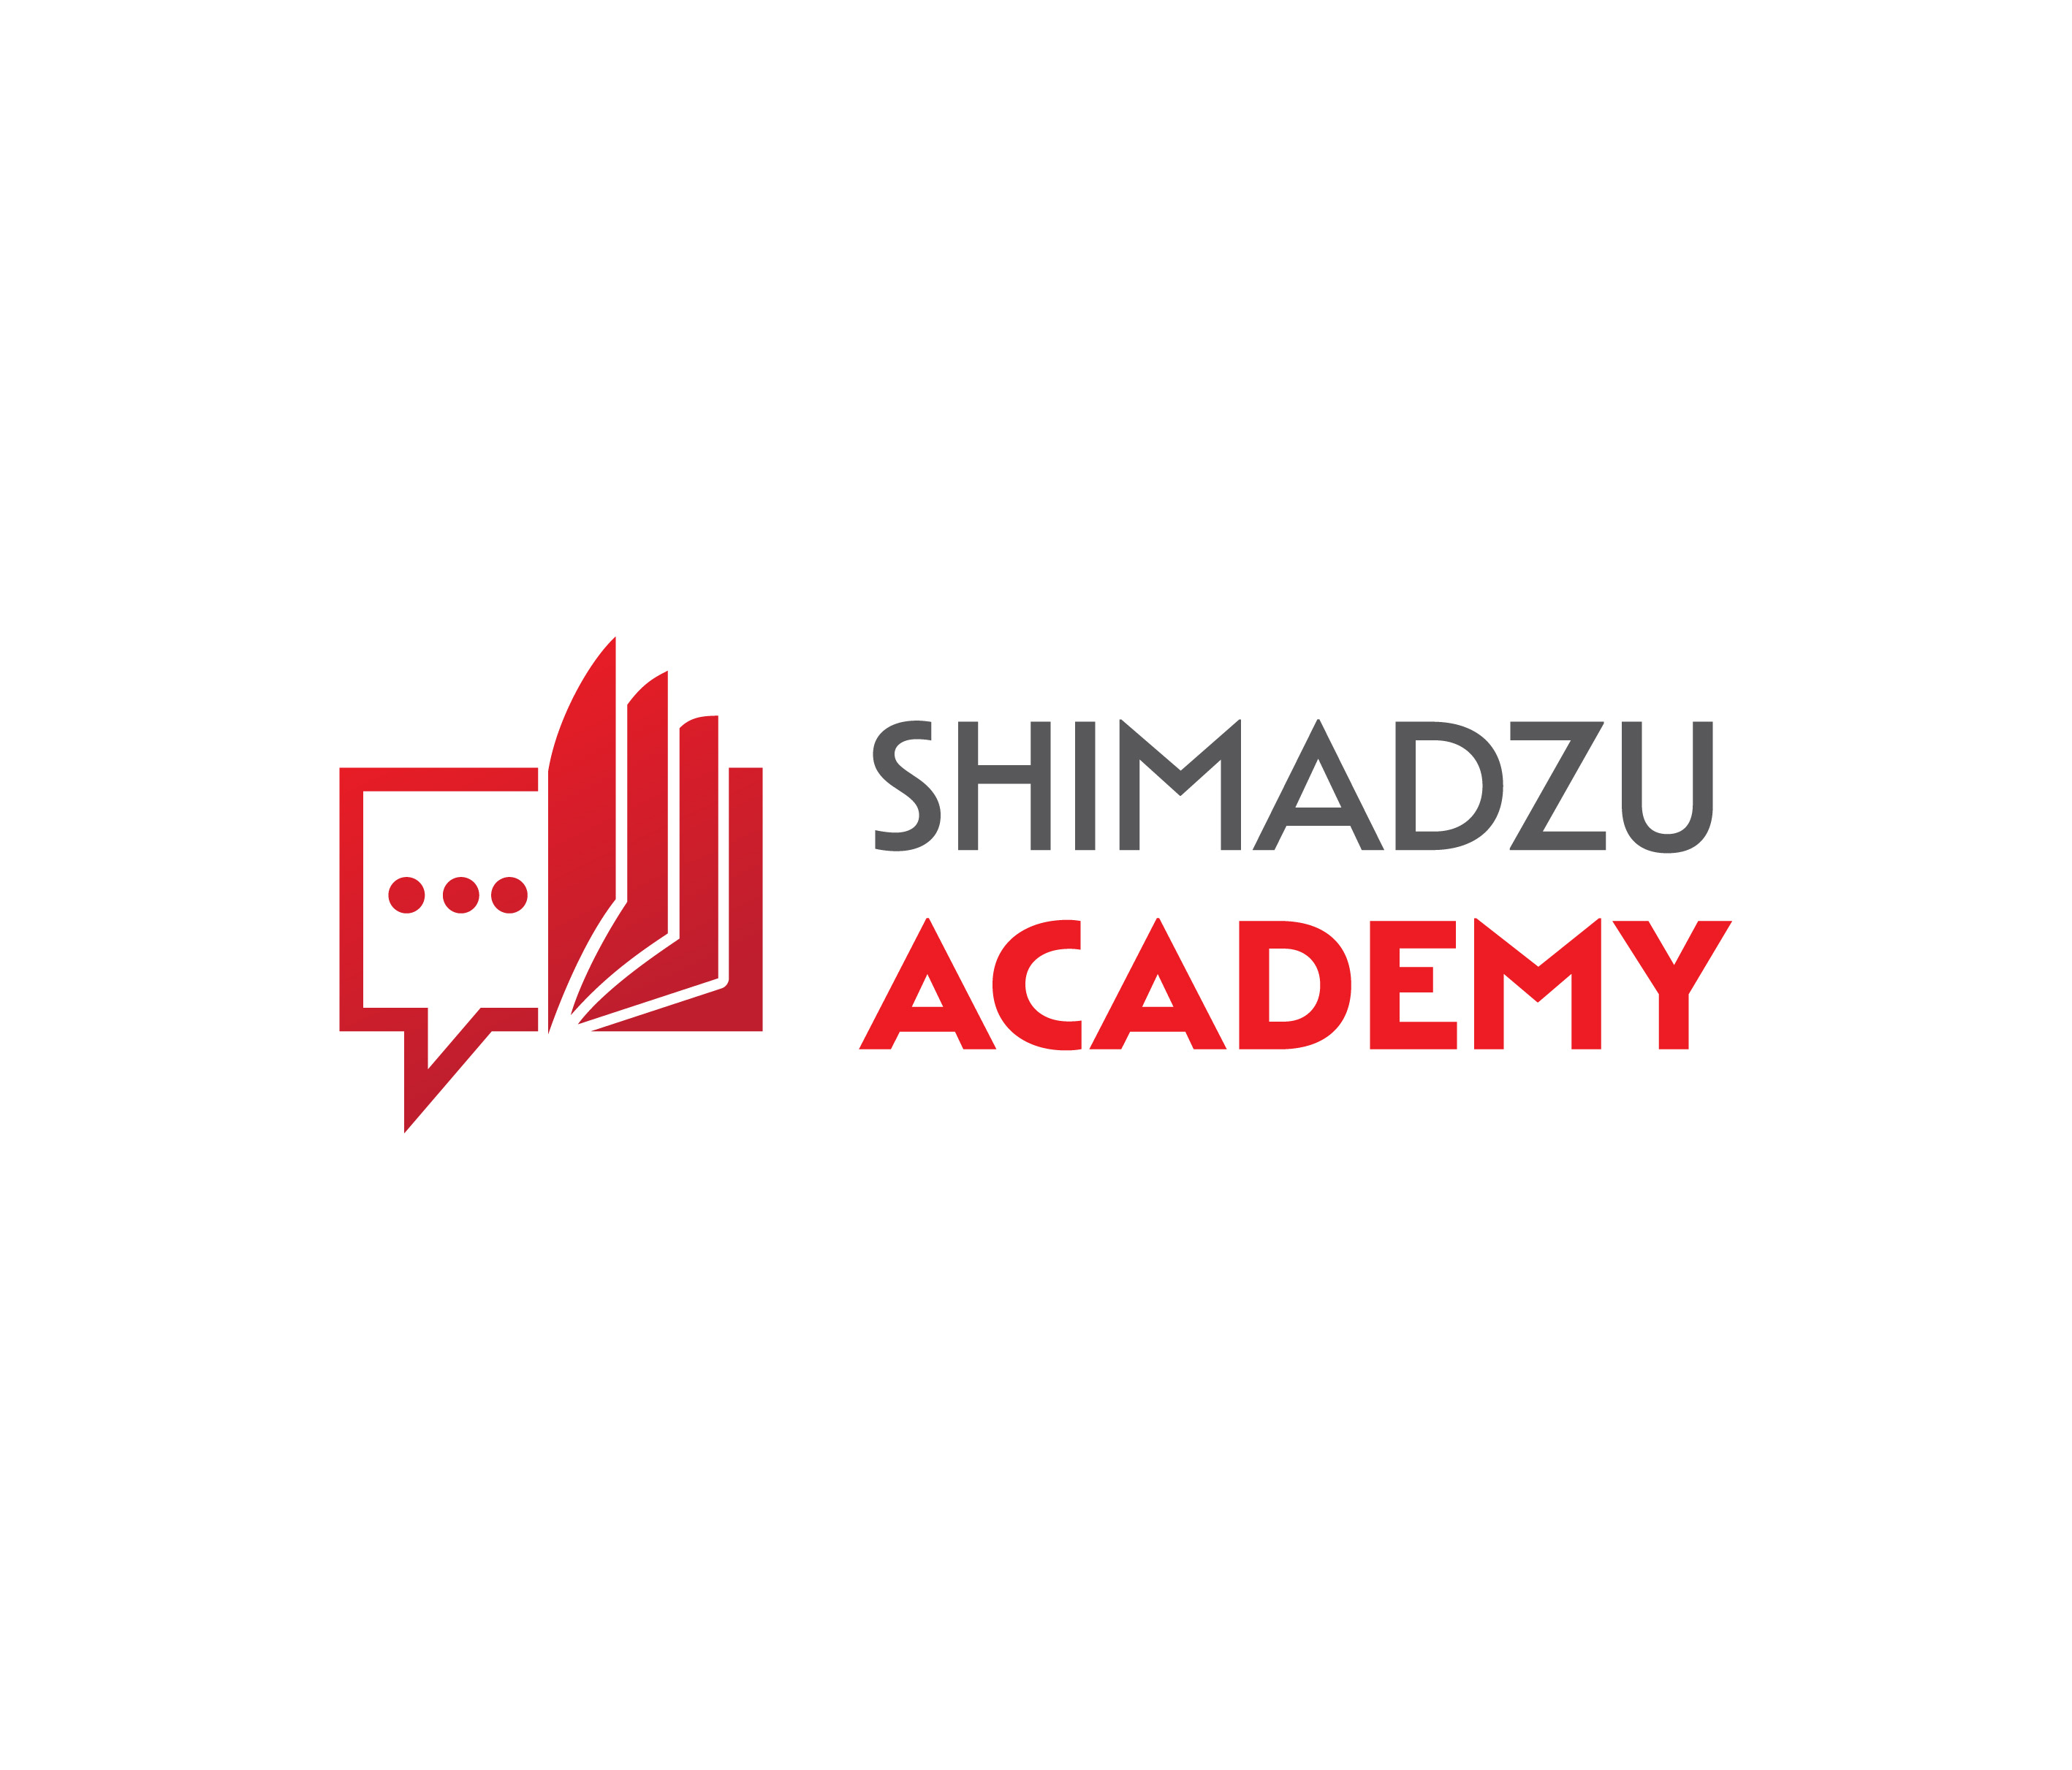 Shimadzu Academy